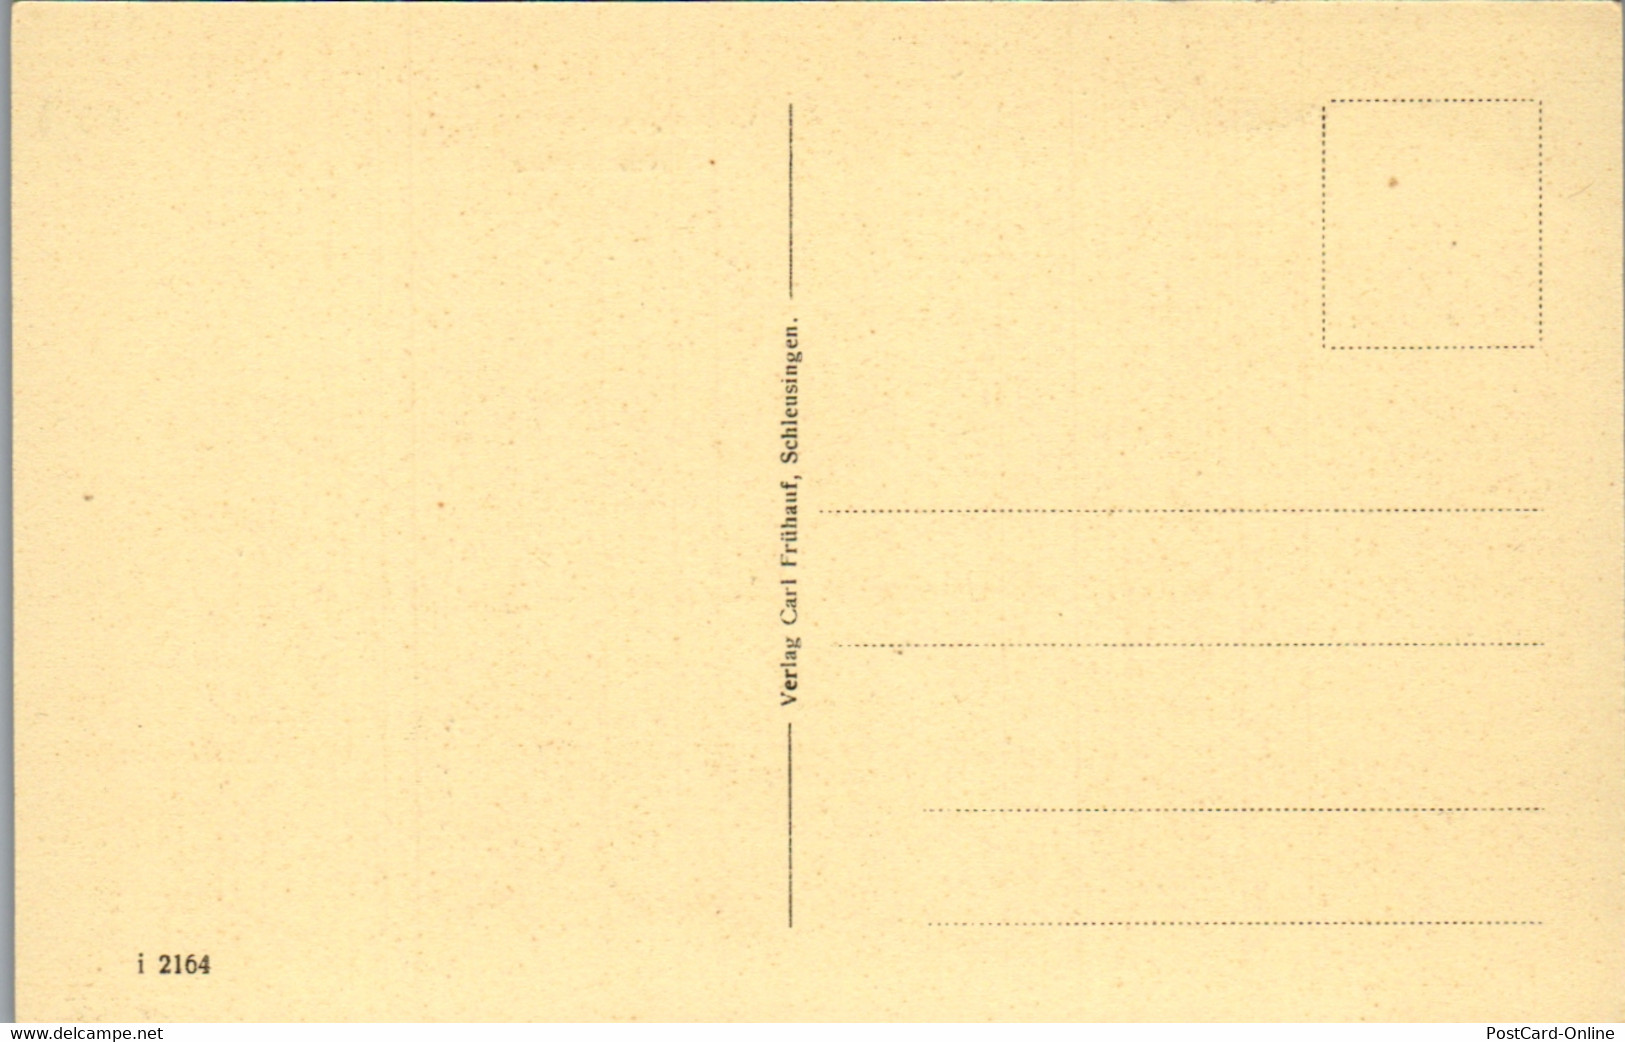 42477 - Künstlerkarte - Schleusingen , Hexentörmle , Signiert Carl Frühauf 1920 - Nicht Gelaufen - Schleusingen